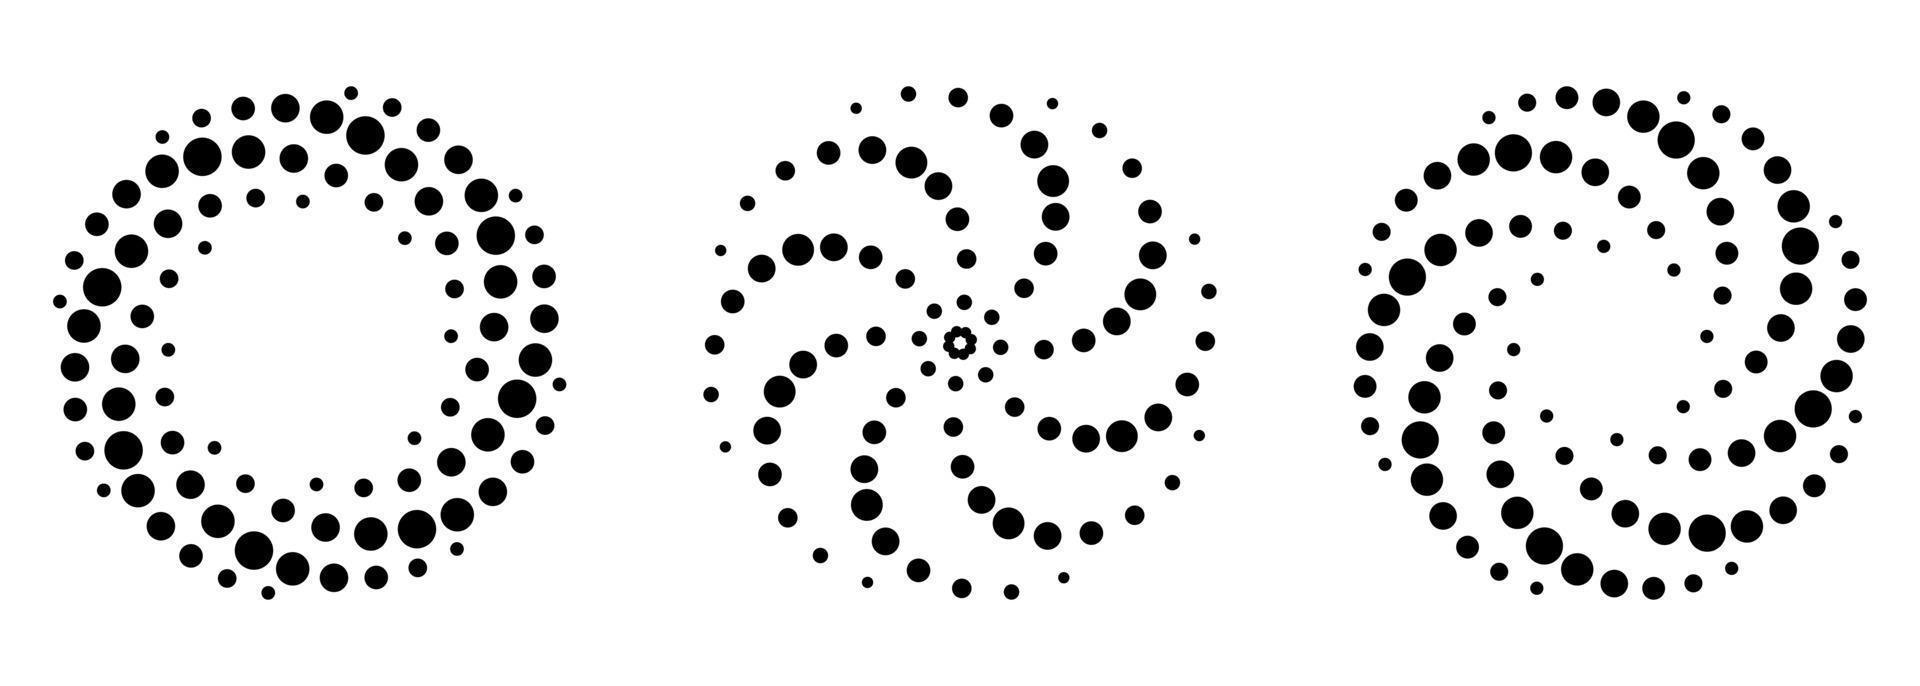 conjunto de padrão de meio-tom em espiral. pontos pretos em círculo sobre fundo branco. modelo minimalista de redemoinho redondo. gire o design moderno abstrato. ilustração vetorial. vetor